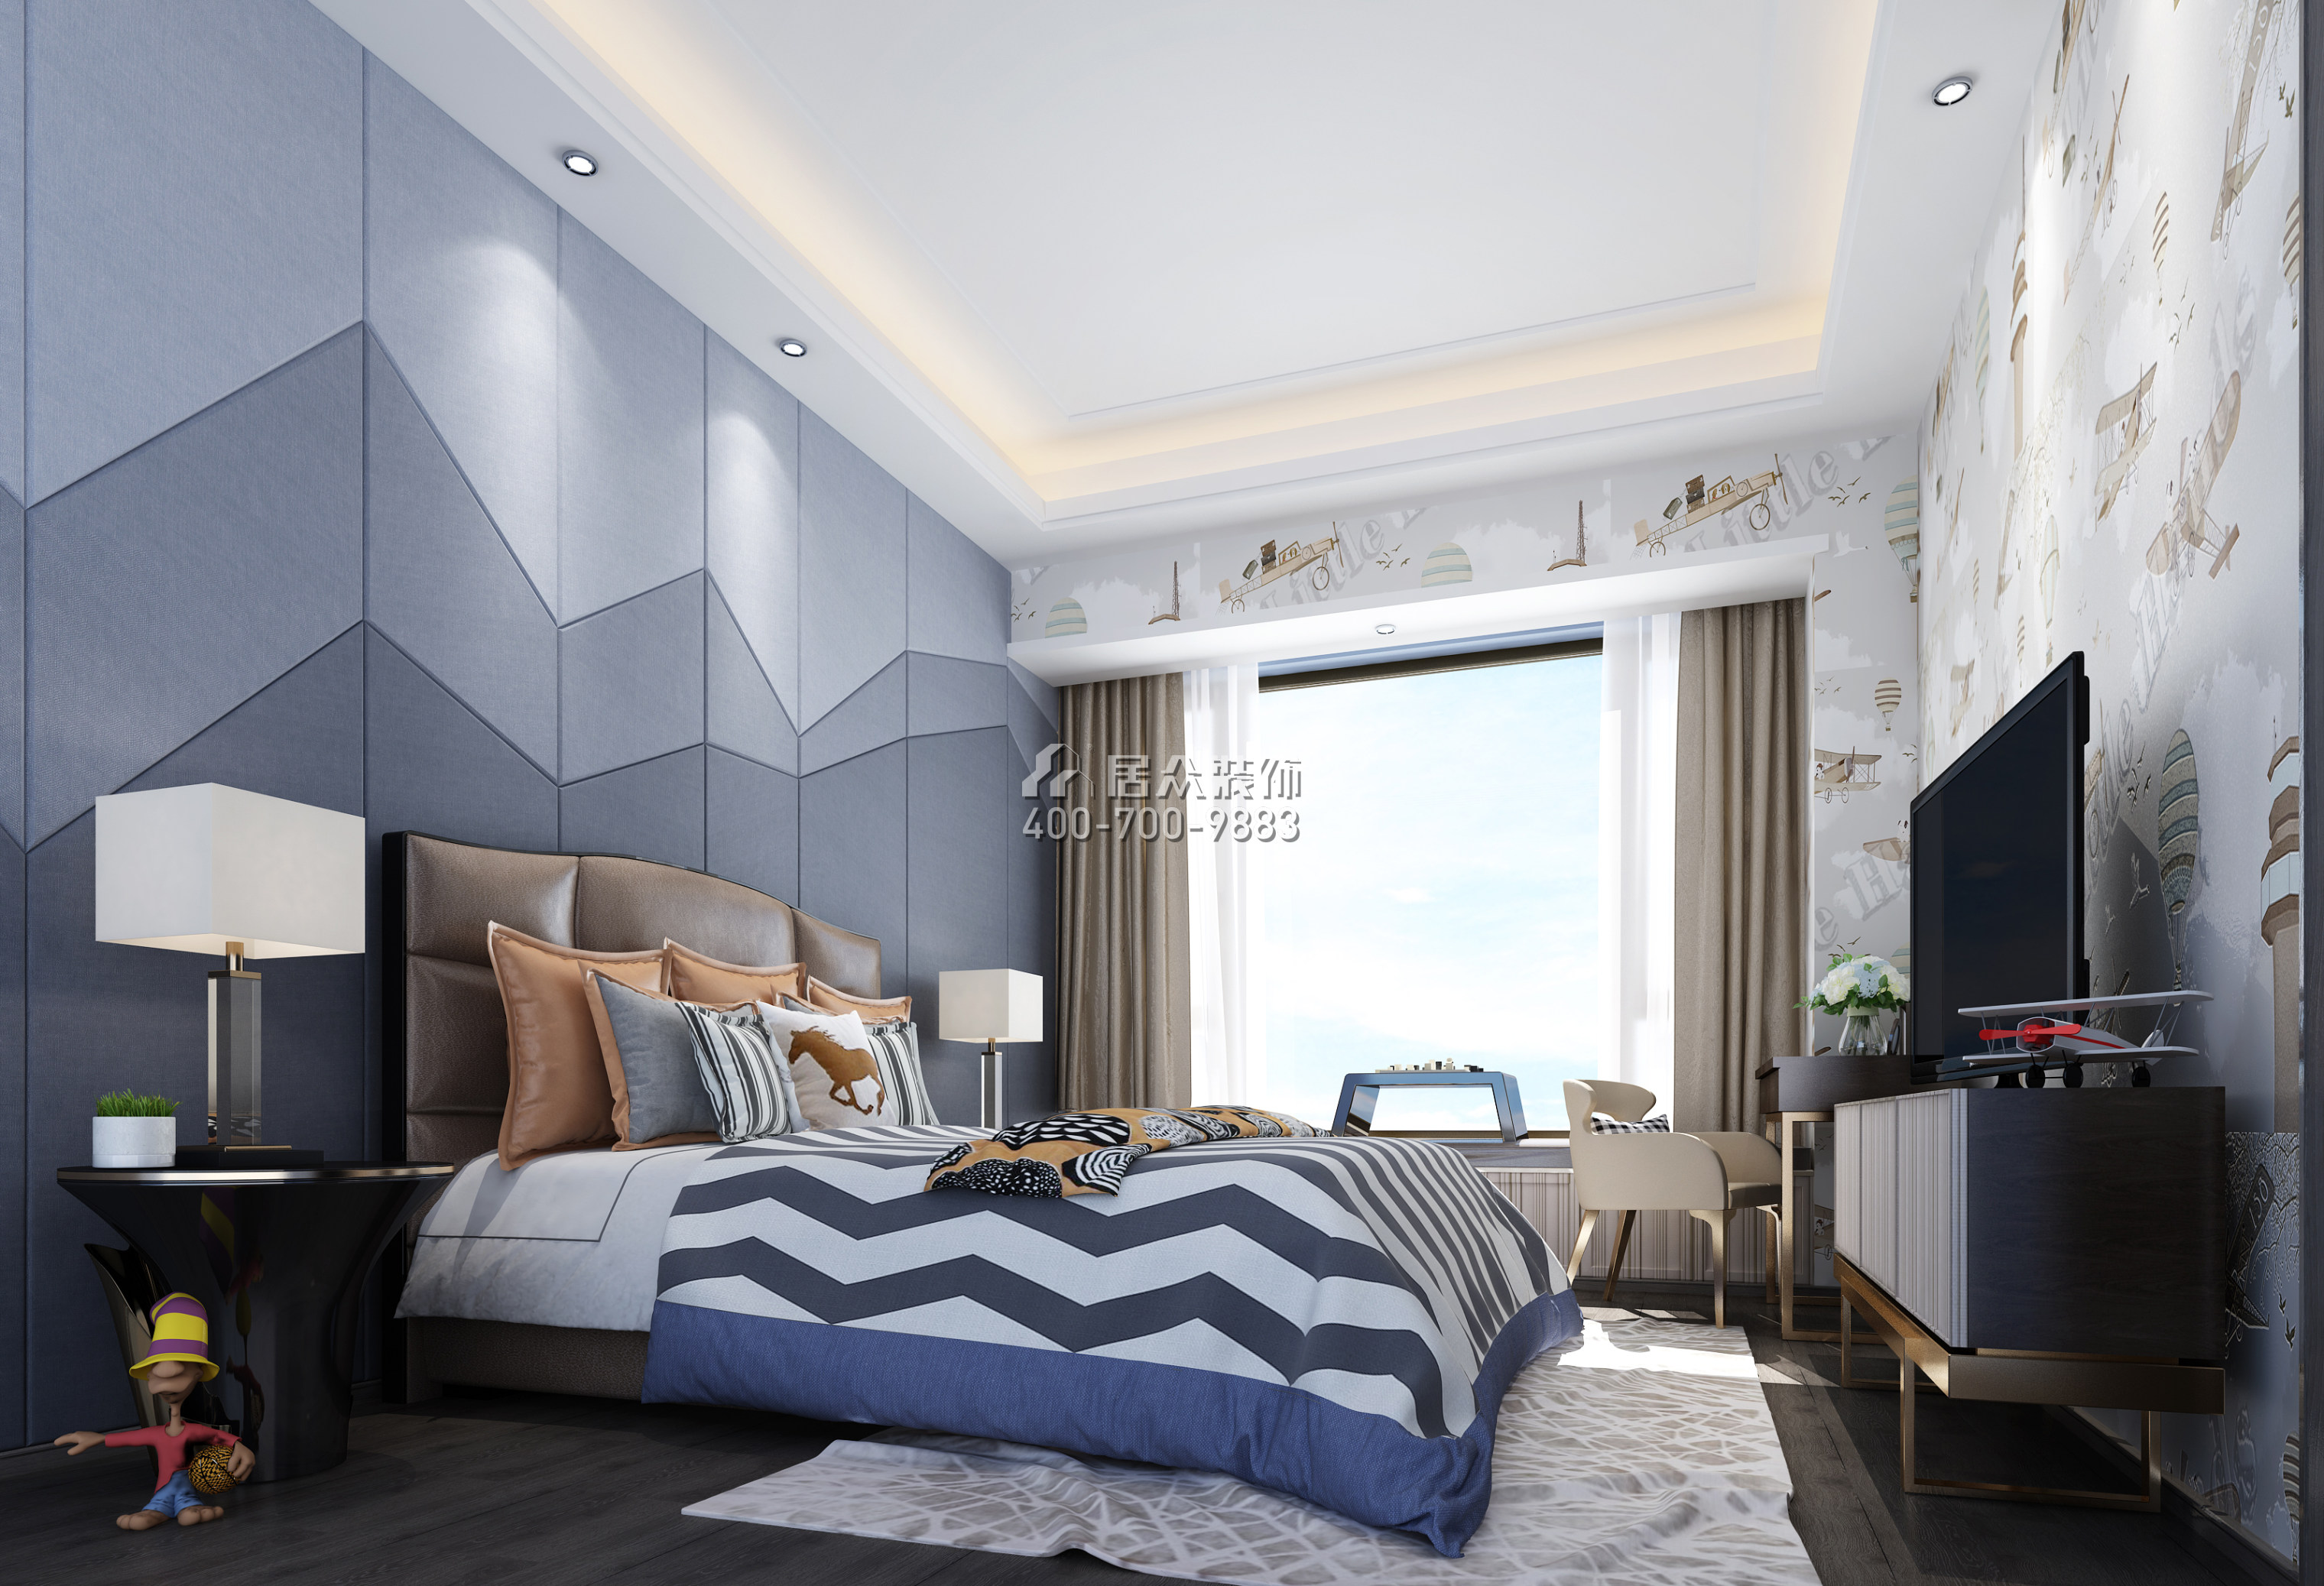 保利國際廣場250平方米現代簡約風格平層戶型臥室裝修效果圖